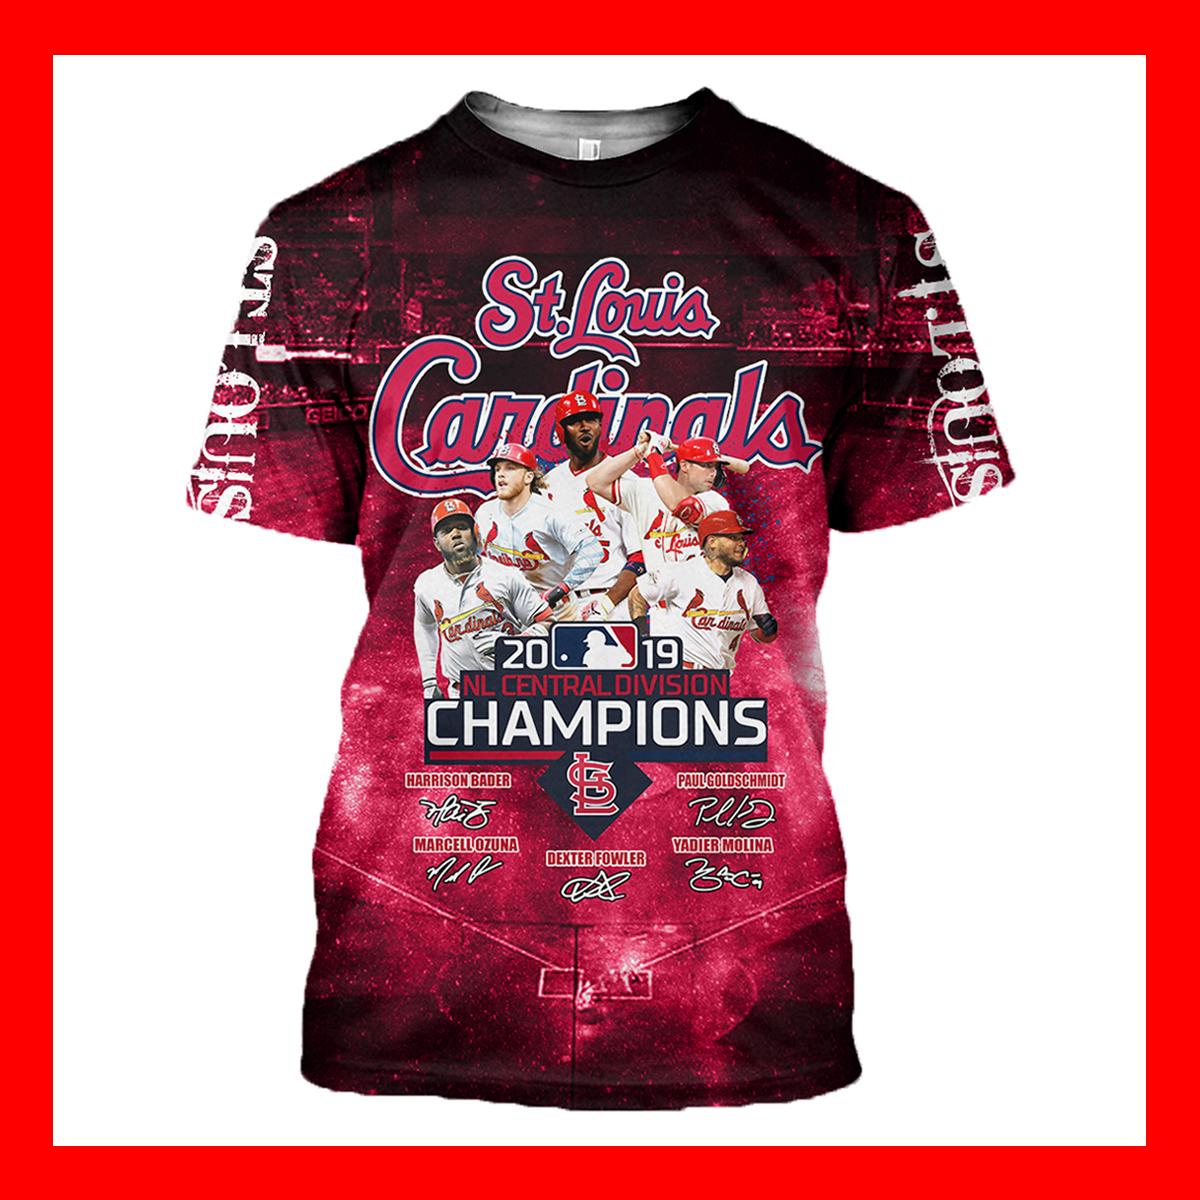 cardinals division champion shirts